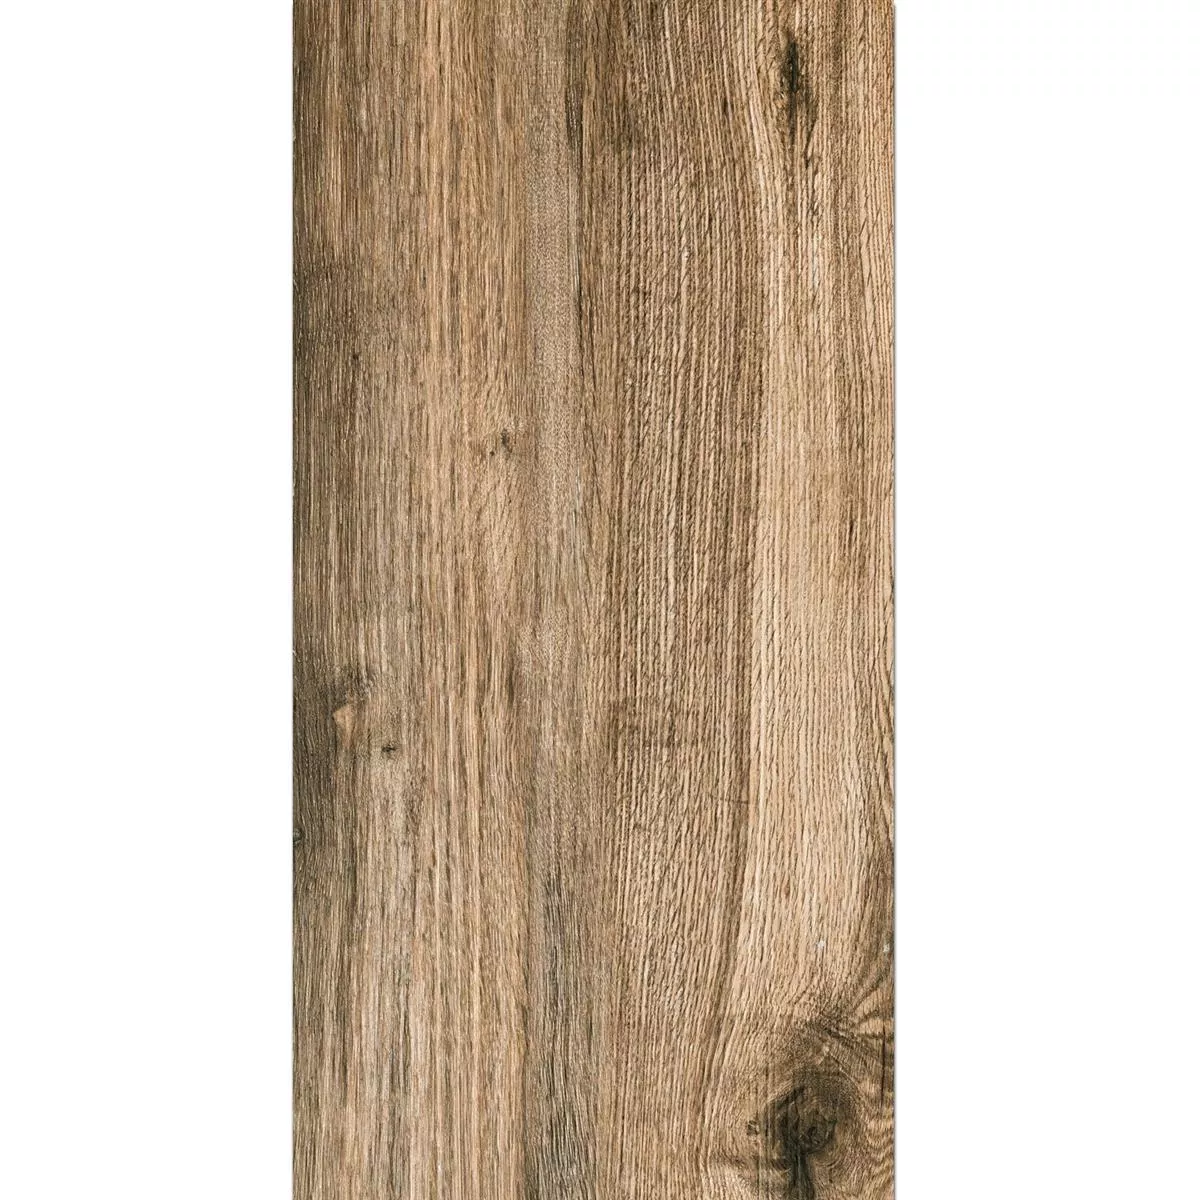 Taras Płyta Starwood Wygląd Drewna Oak 45x90cm